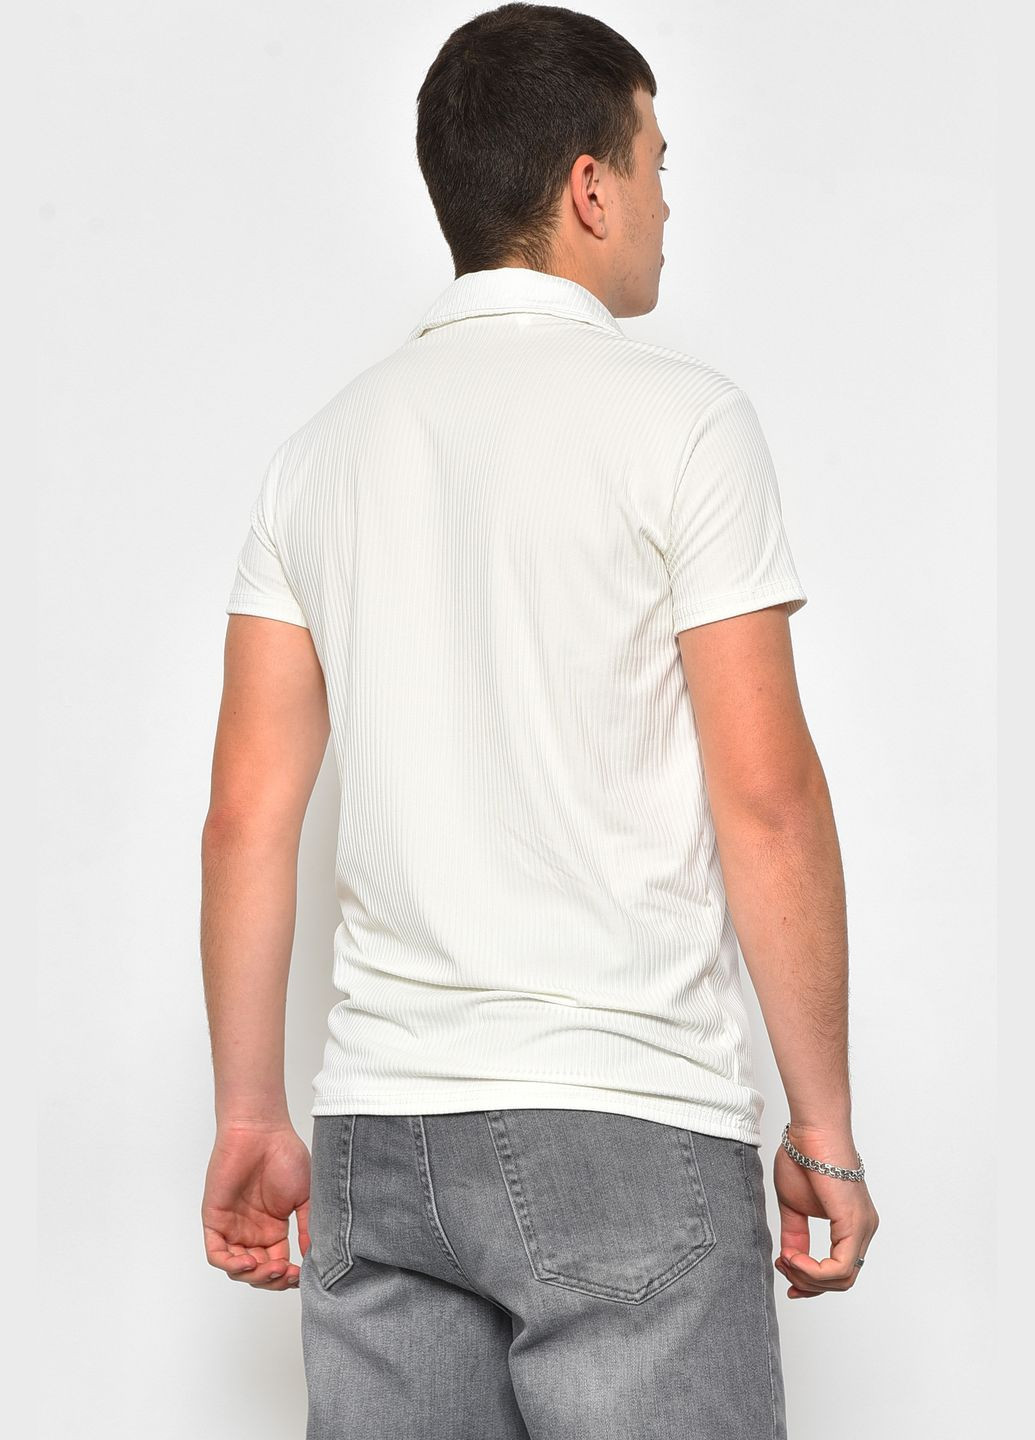 Белая футболка мужская поло белого цвета Let's Shop